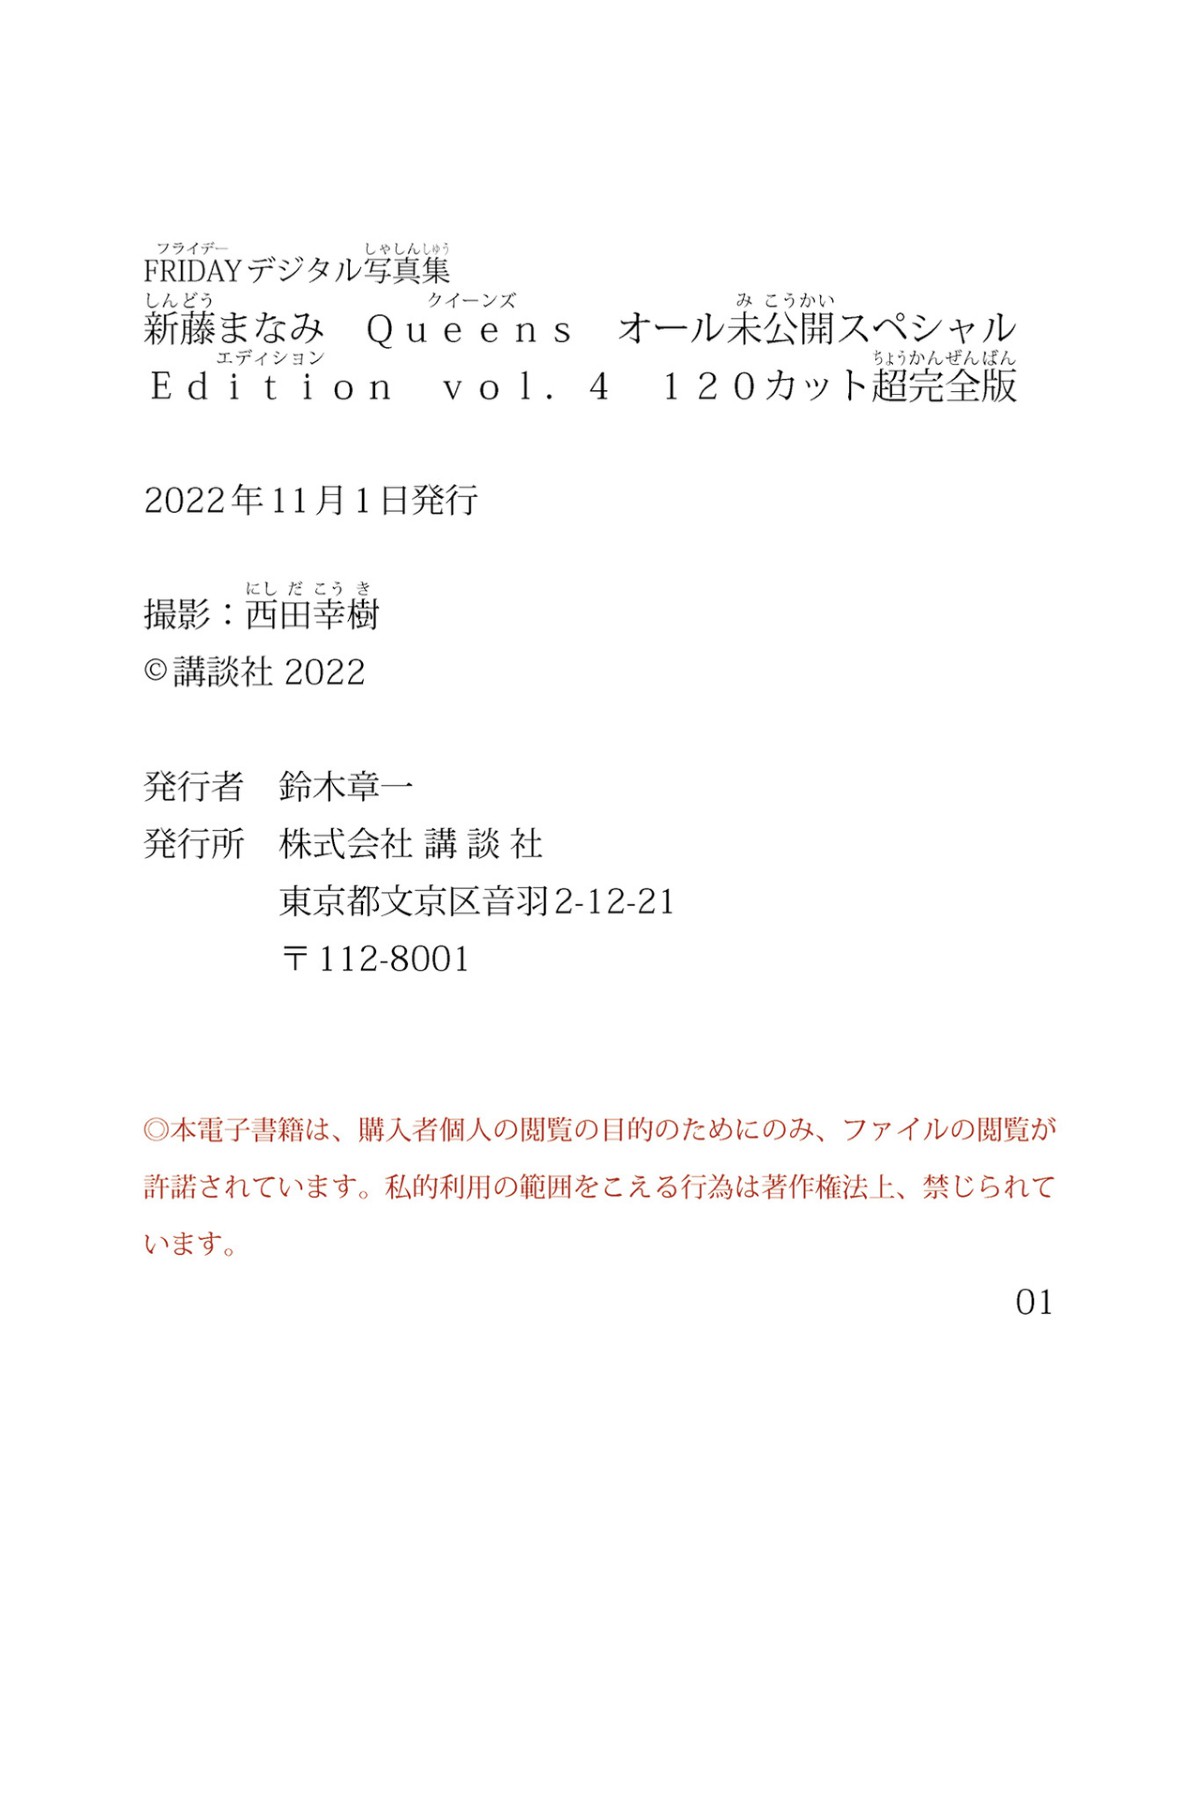 Photobook 2022 10 07 Manami Shindo 新藤まなみ Queens All Unreleased Special Edition Vol 004 0111 1828817842.jpg